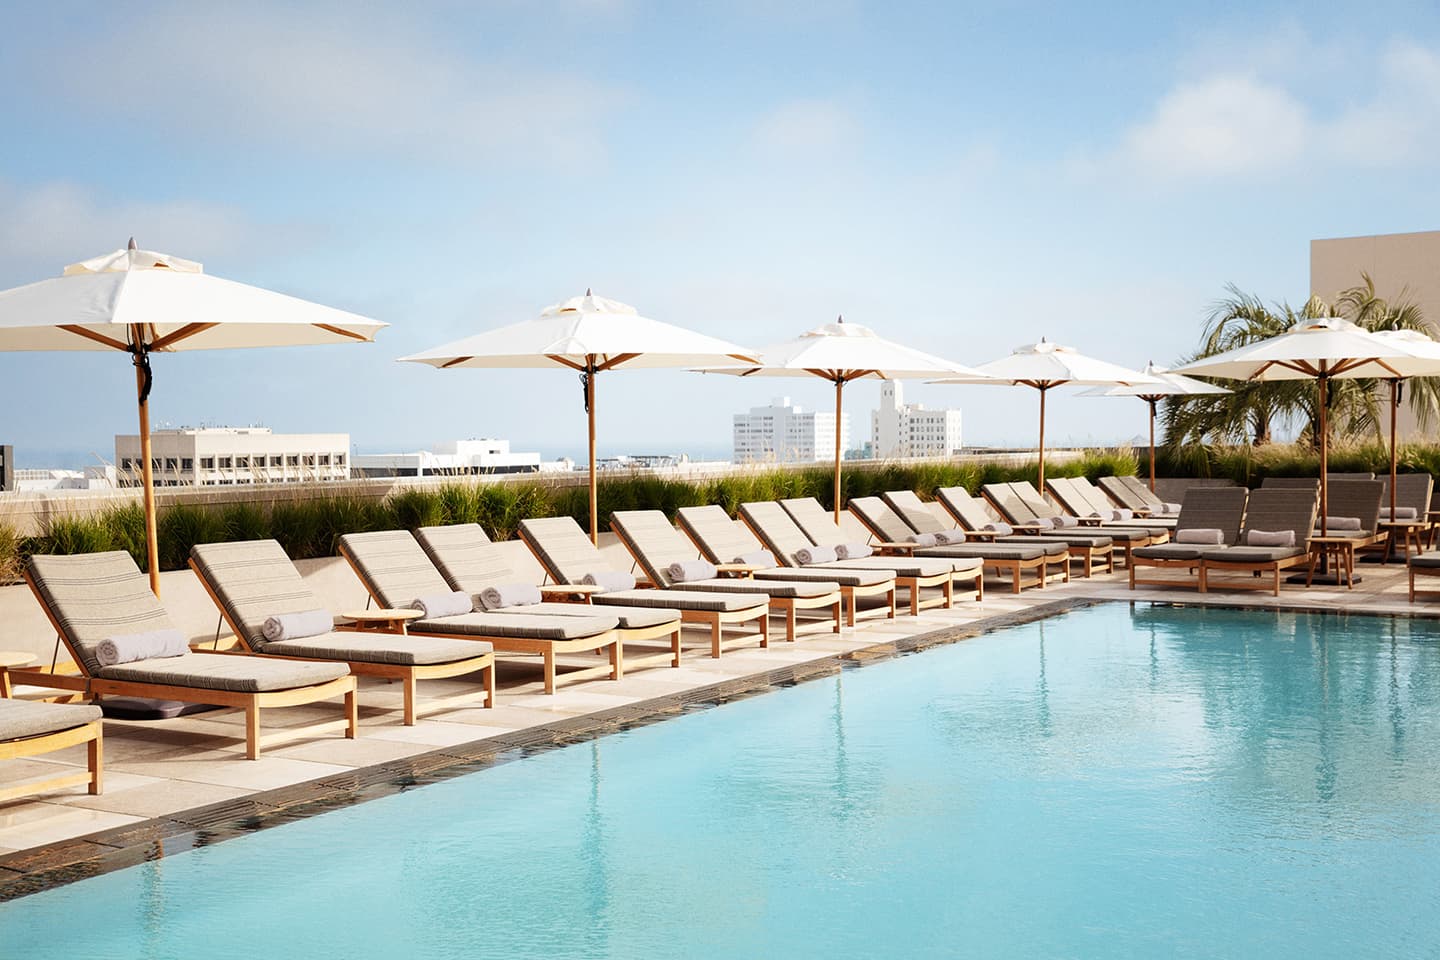 Интерьер отеля Santa Monica Proper в пляжном стиле — проект Келли Уэстлер